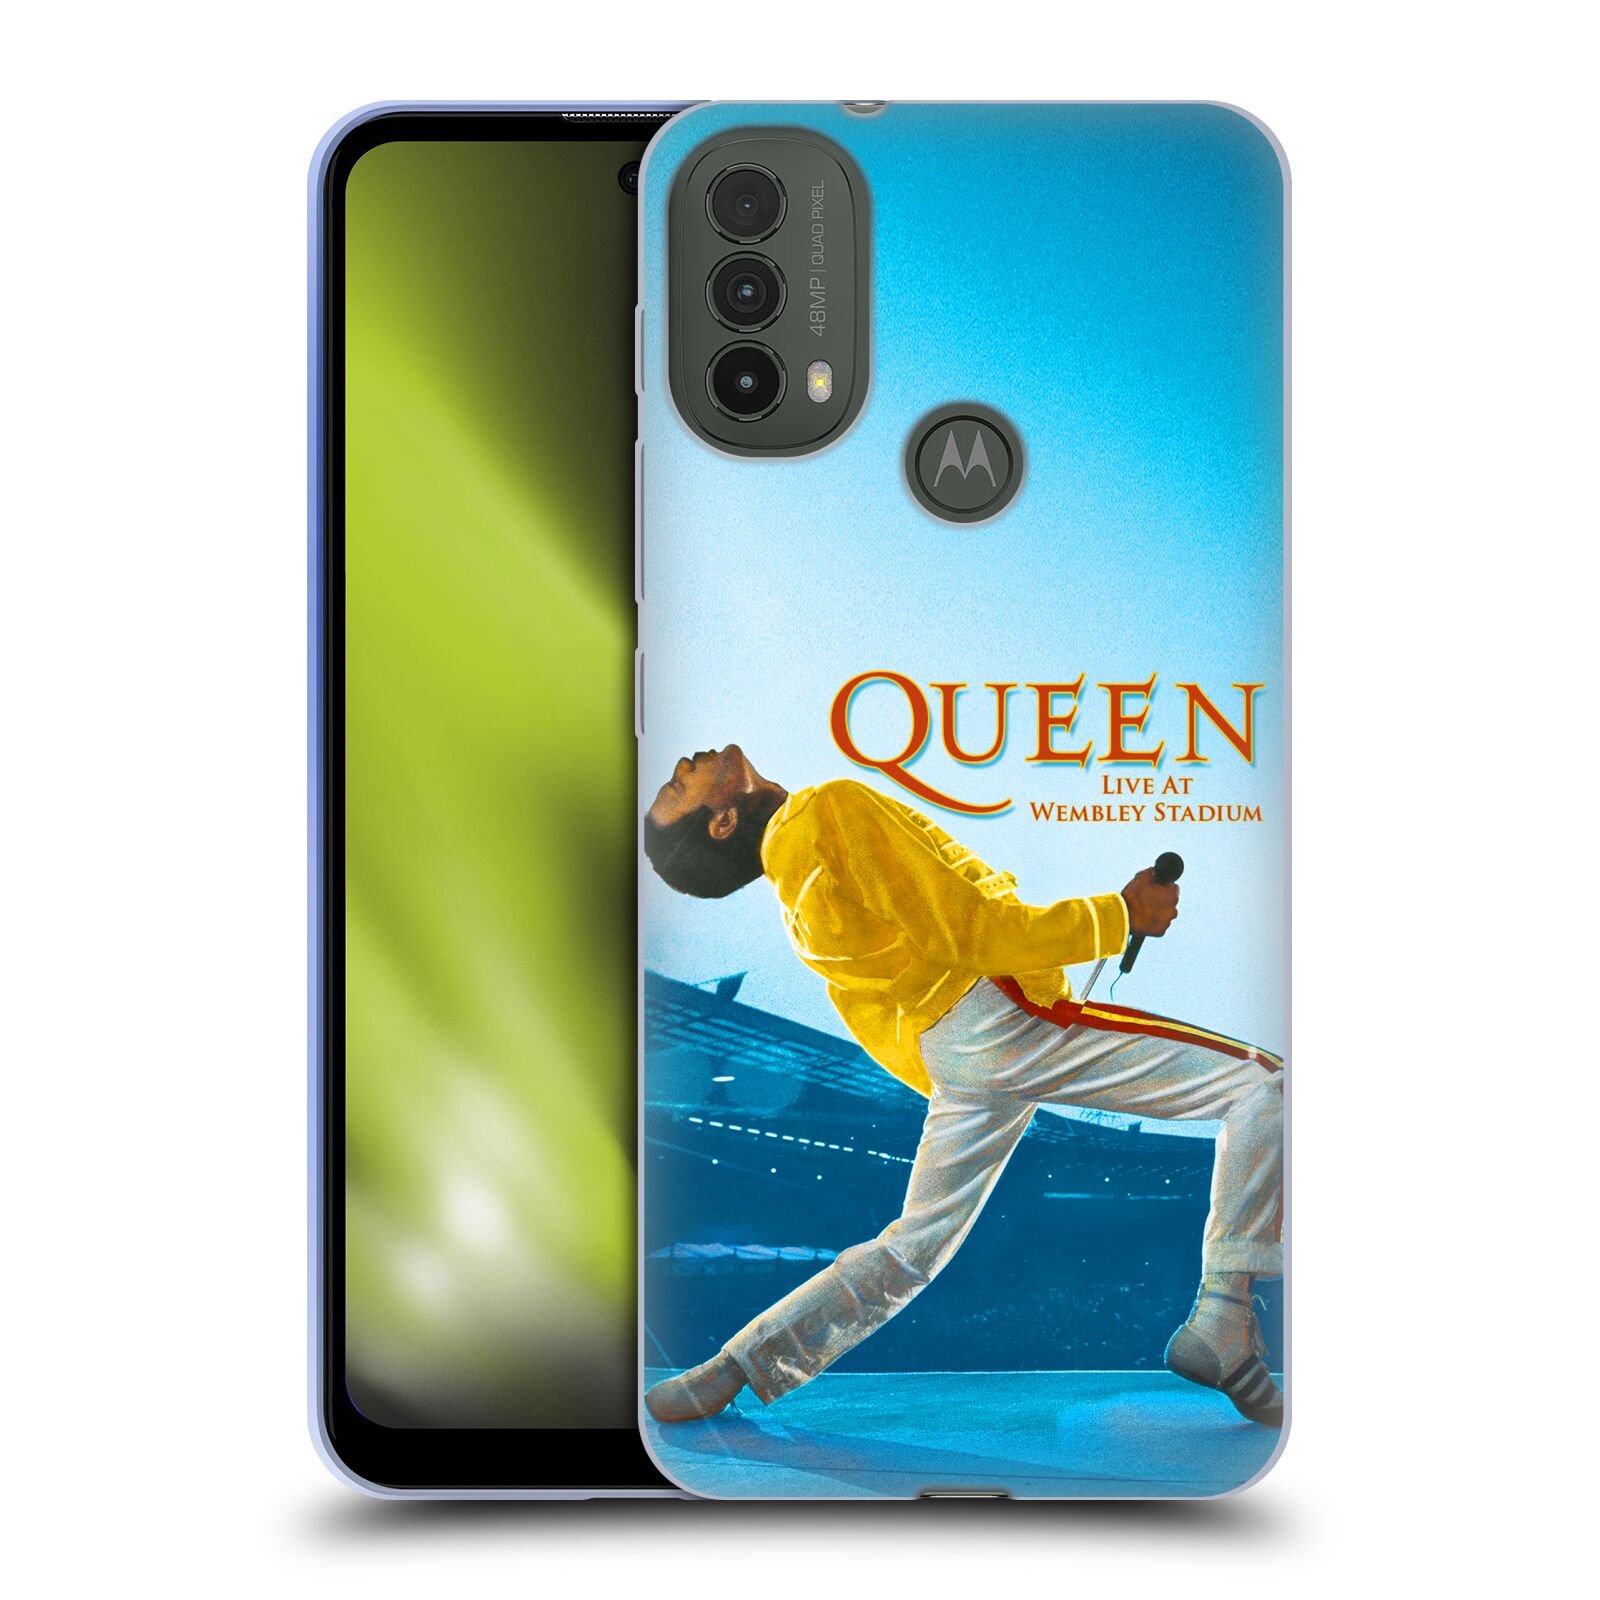 Silikonové pouzdro na mobil Motorola Moto E40 - Head Case - Queen - Freddie Mercury